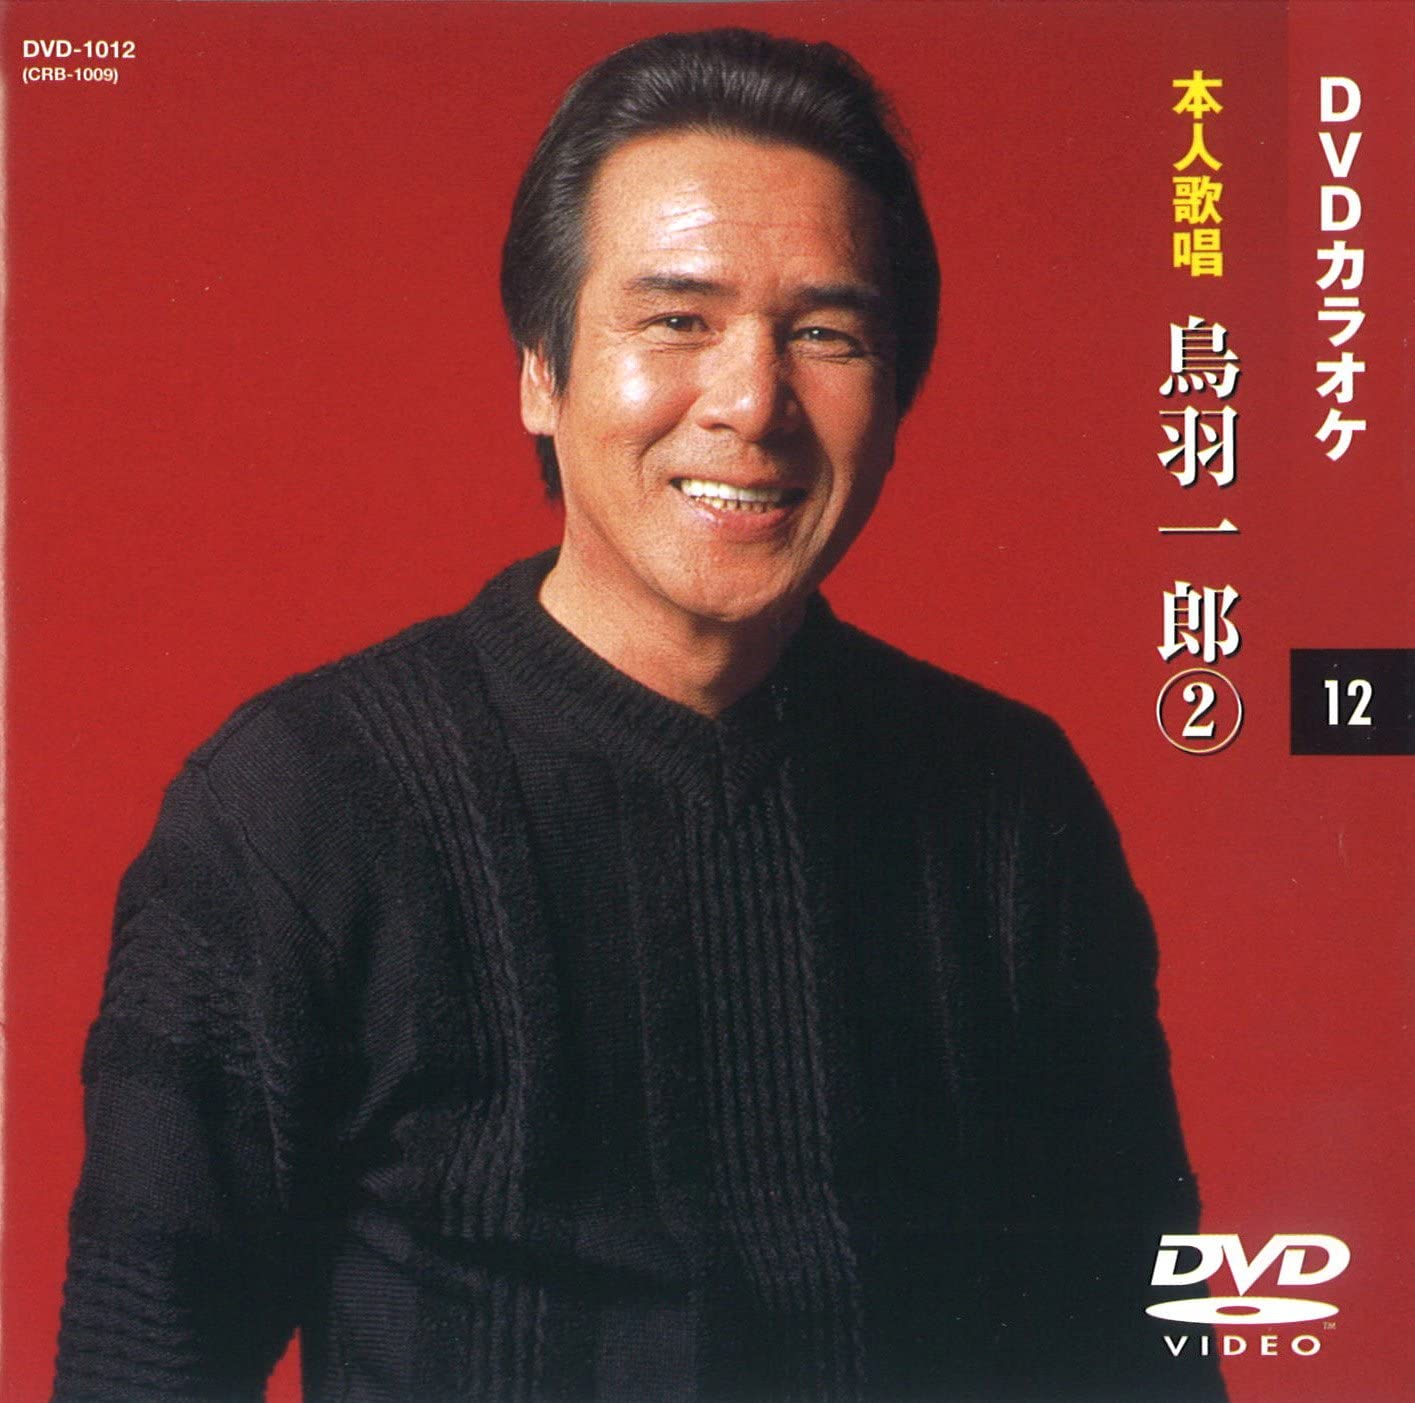 [ person himself ..DVD karaoke ] bird feather one .2 (DVD karaoke ) DVD-1012